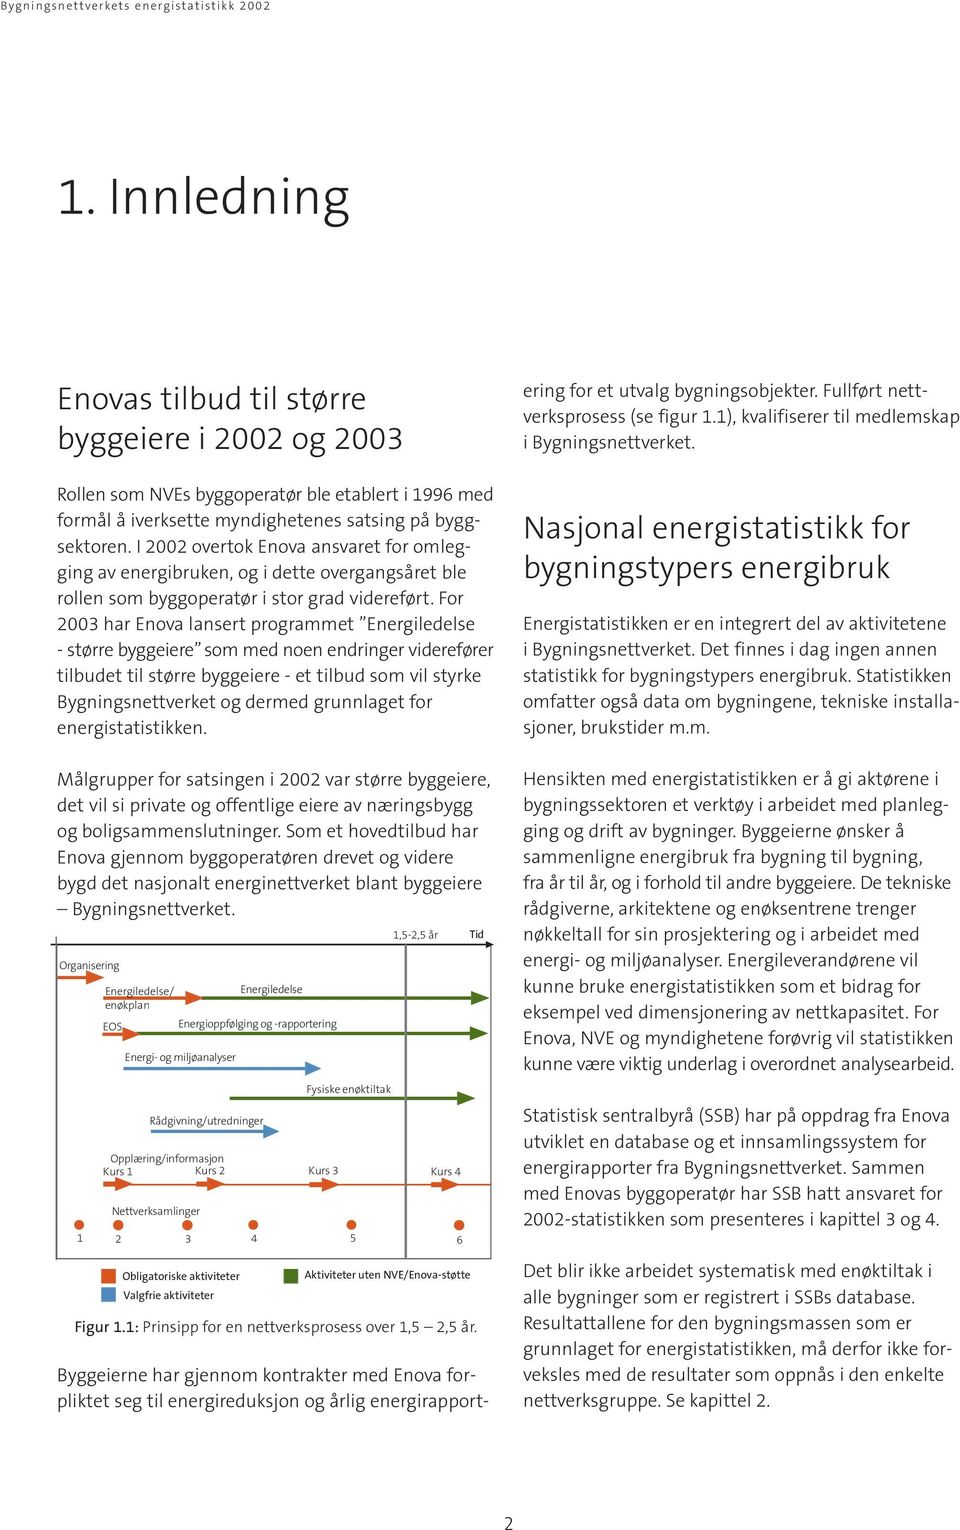 For 2003 har Enova lansert programmet Energiledelse - større byggeiere som med noen endringer viderefører tilbudet til større byggeiere - et tilbud som vil styrke Bygningsnettverket og dermed